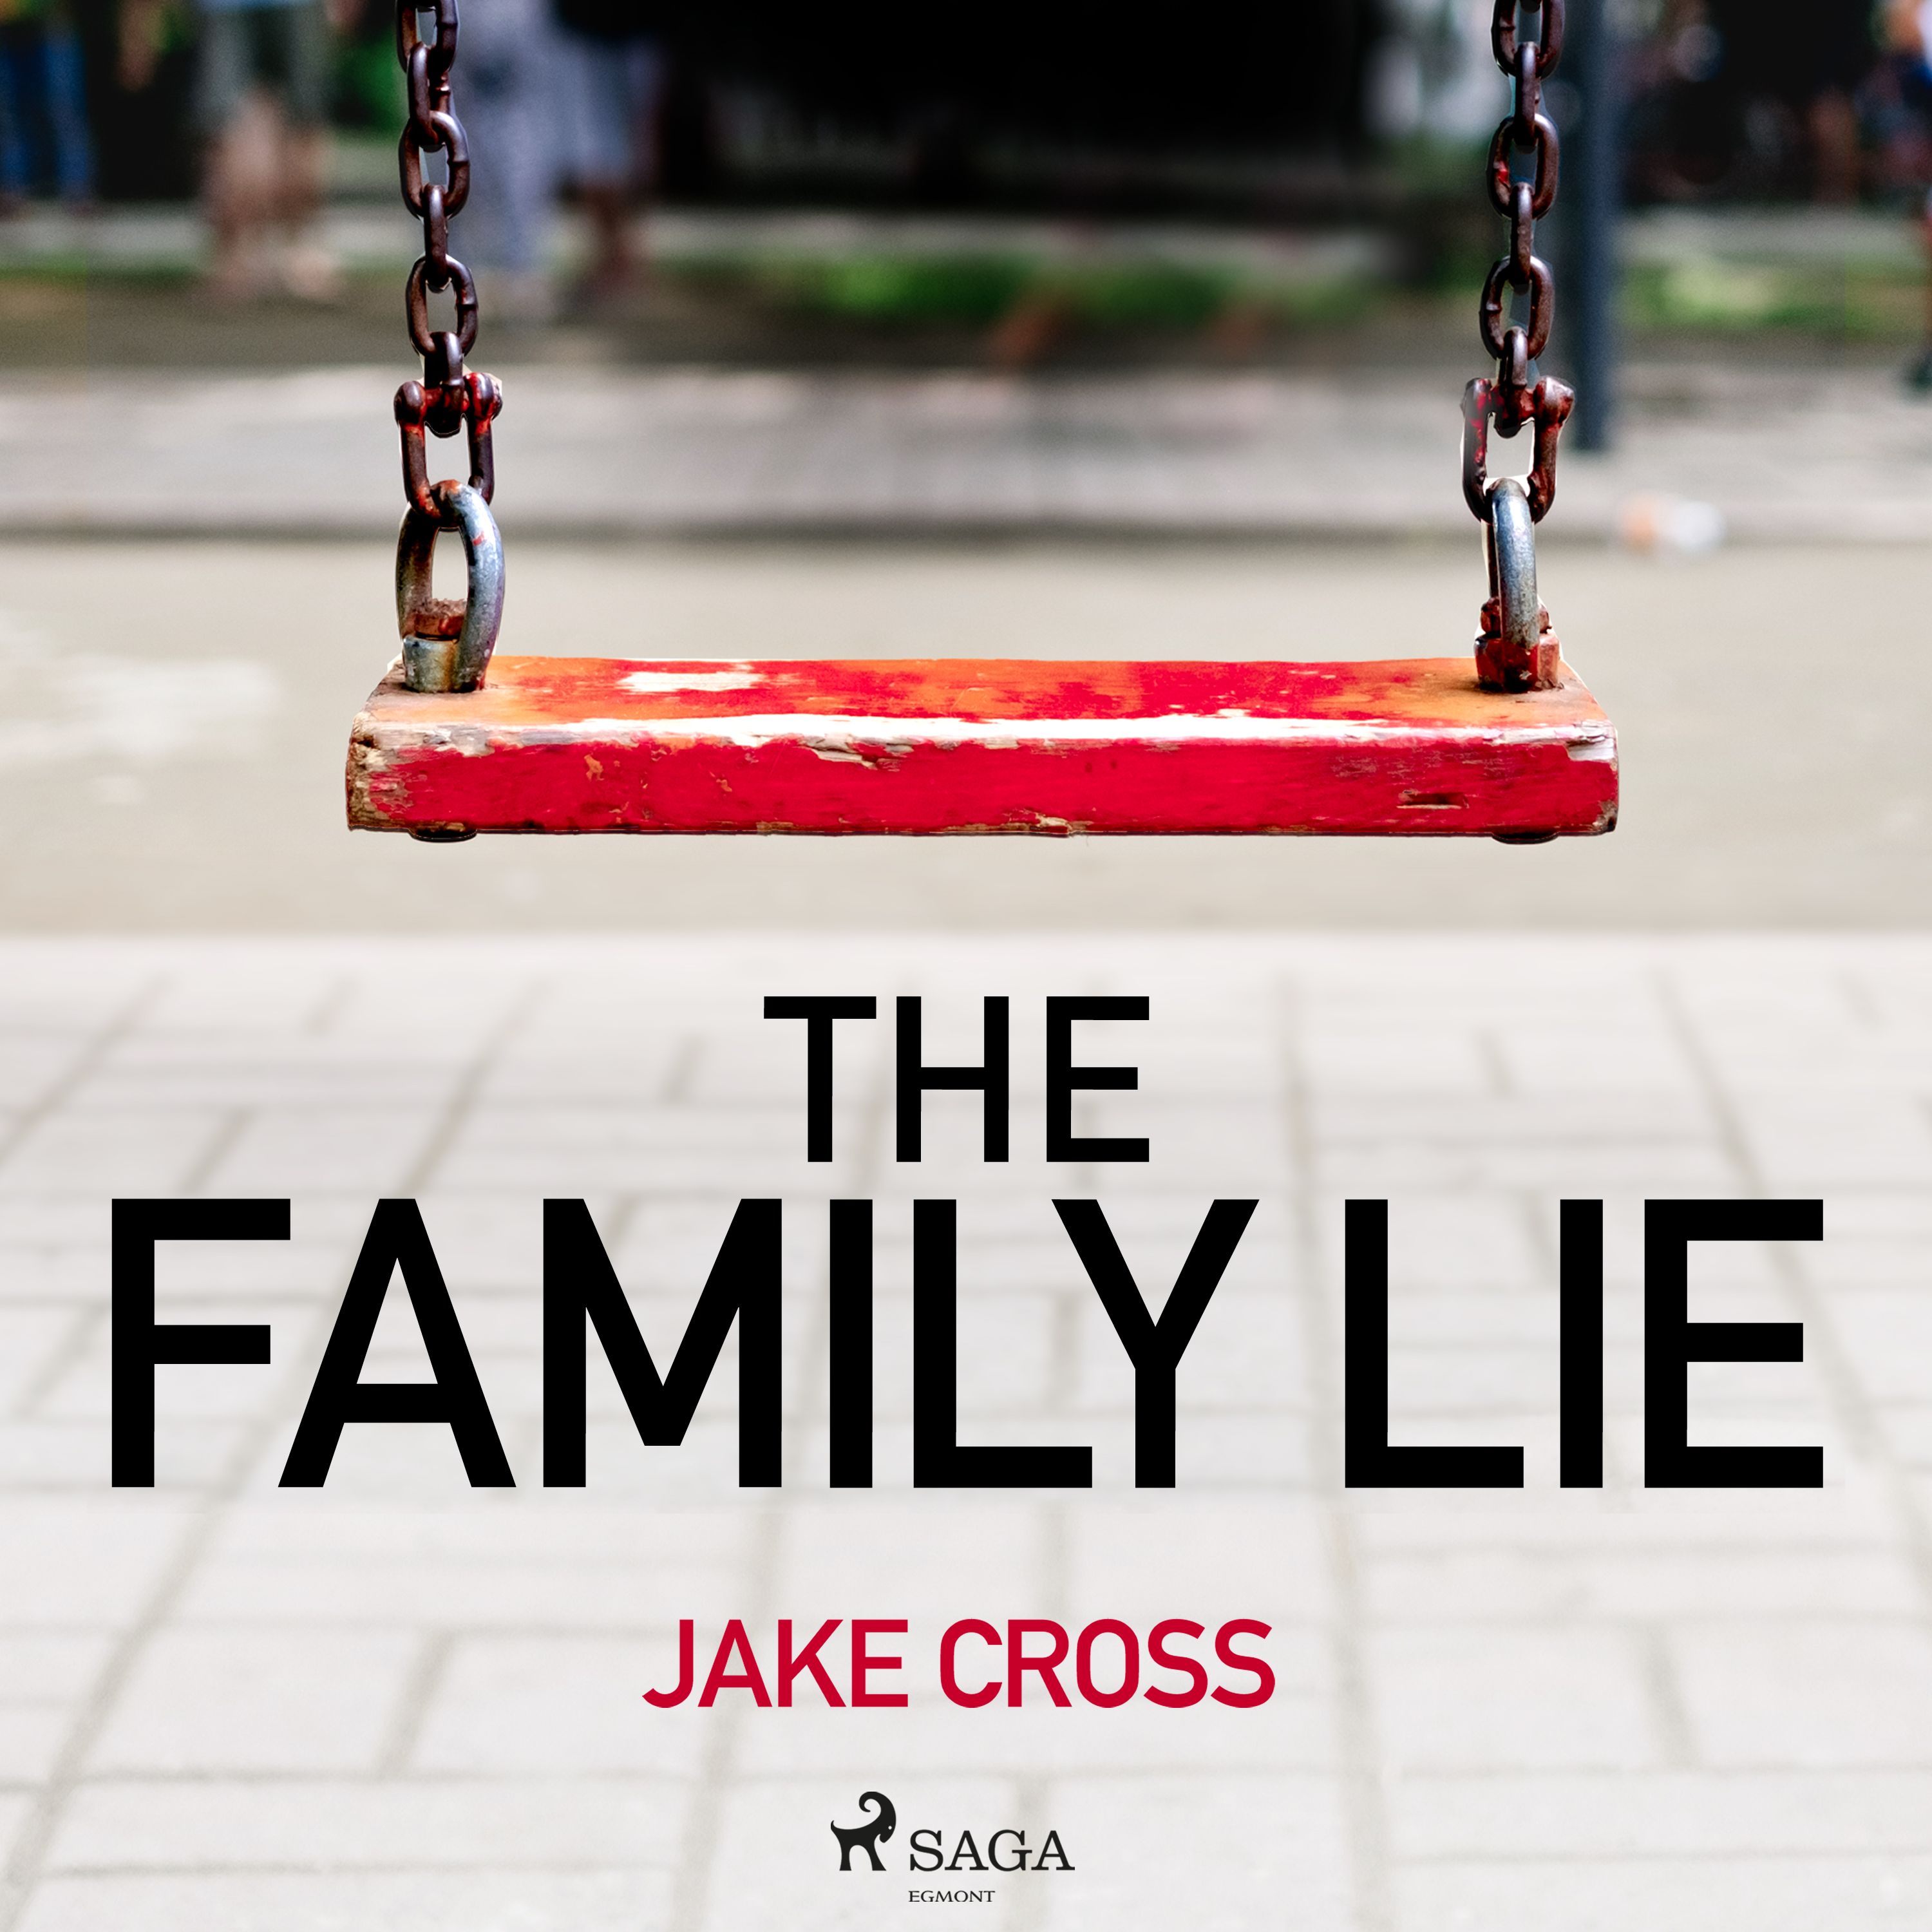 The Family Lie, lydbog af Jake Cross